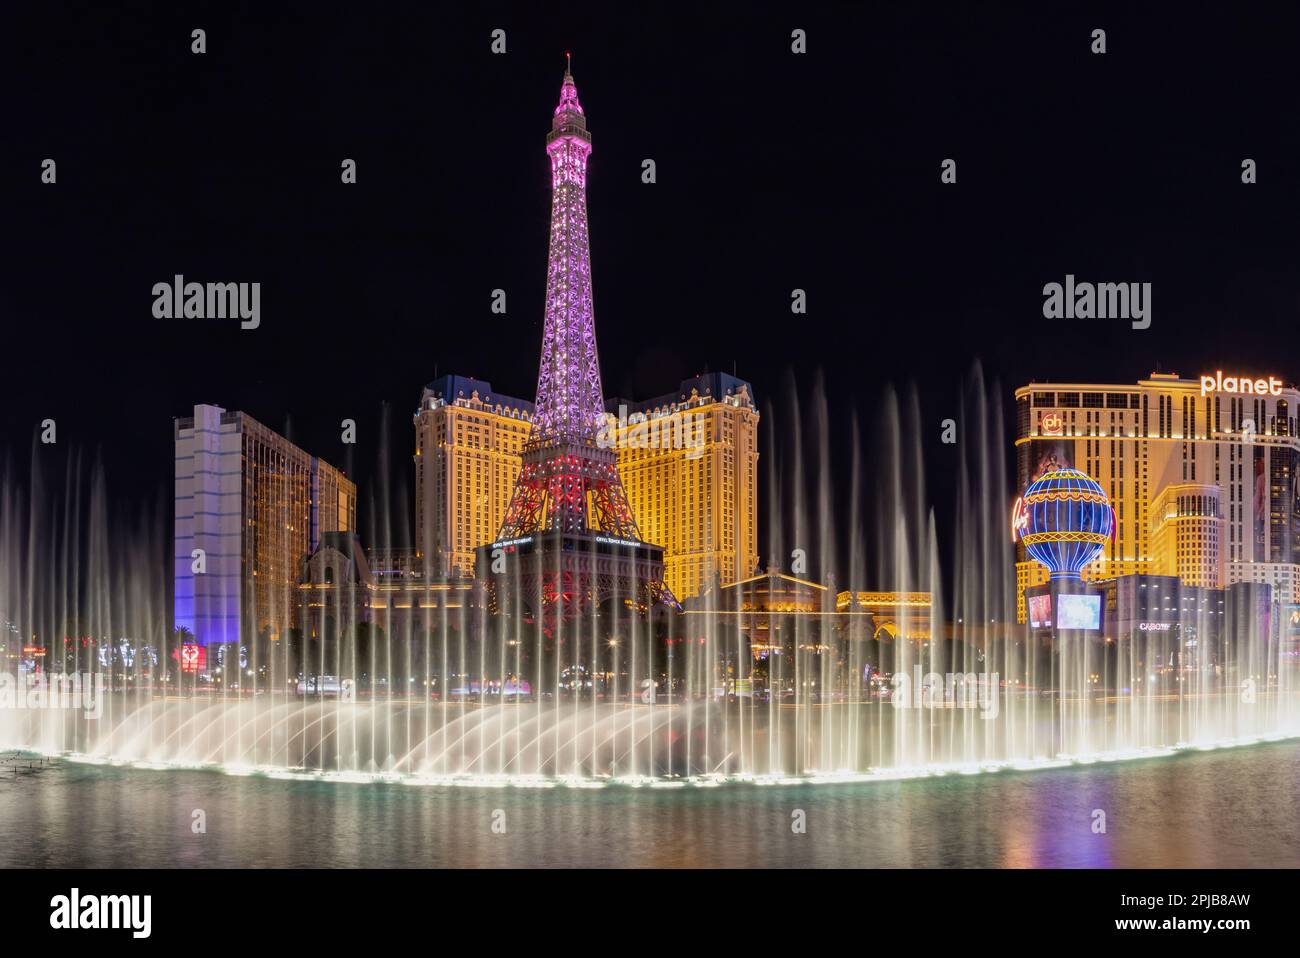 Una foto dello spettacolo d'acqua della Fontana di Bellagio di notte, con la Torre Eiffel di Parigi Las Vegas dietro di essa. Foto Stock